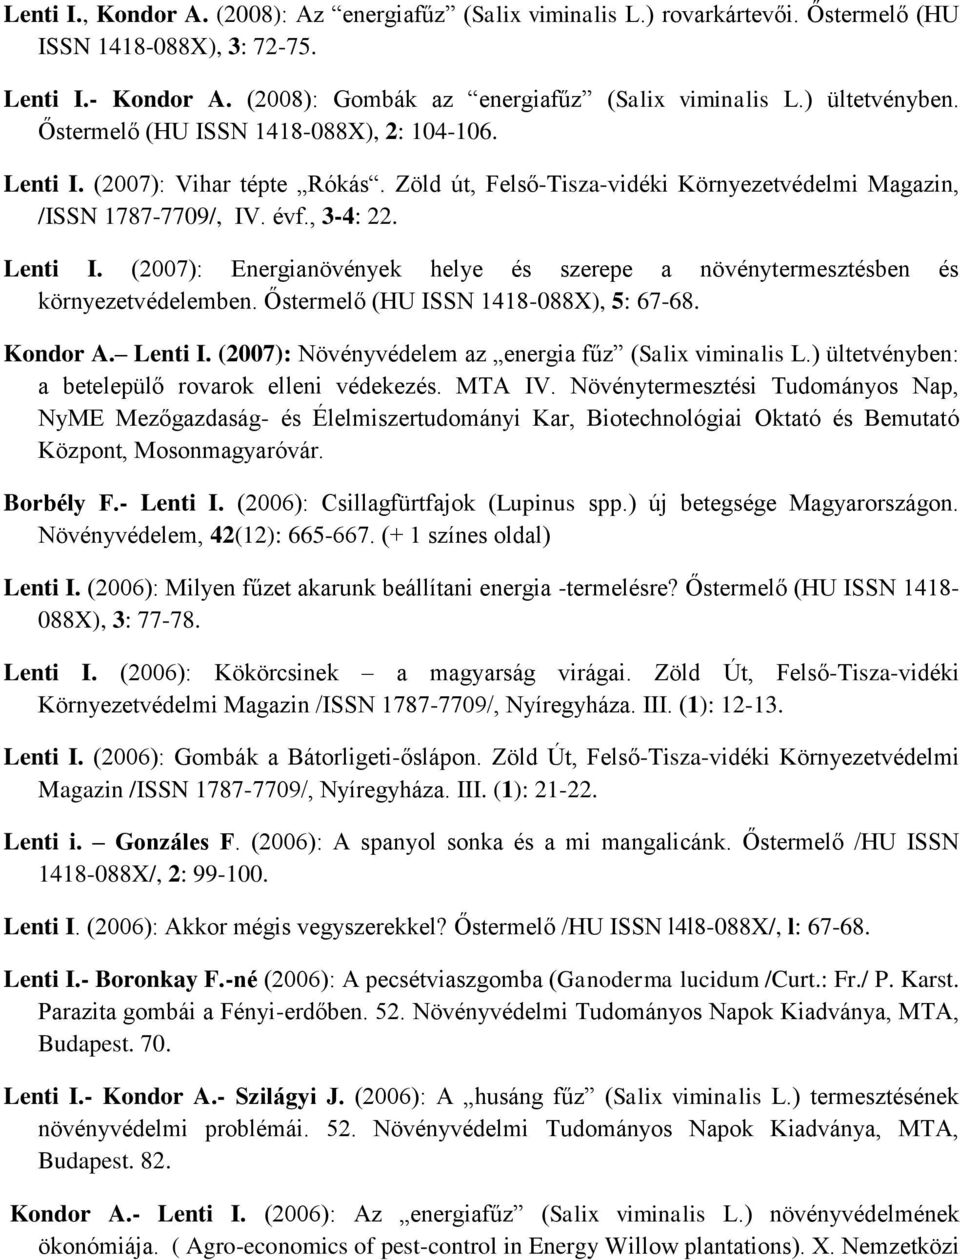 Őstermelő (HU ISSN 1418-088X), 5: 67-68. Kondor A. Lenti I. (2007): Növényvédelem az energia fűz (Salix viminalis L.) ültetvényben: a betelepülő rovarok elleni védekezés. MTA IV.